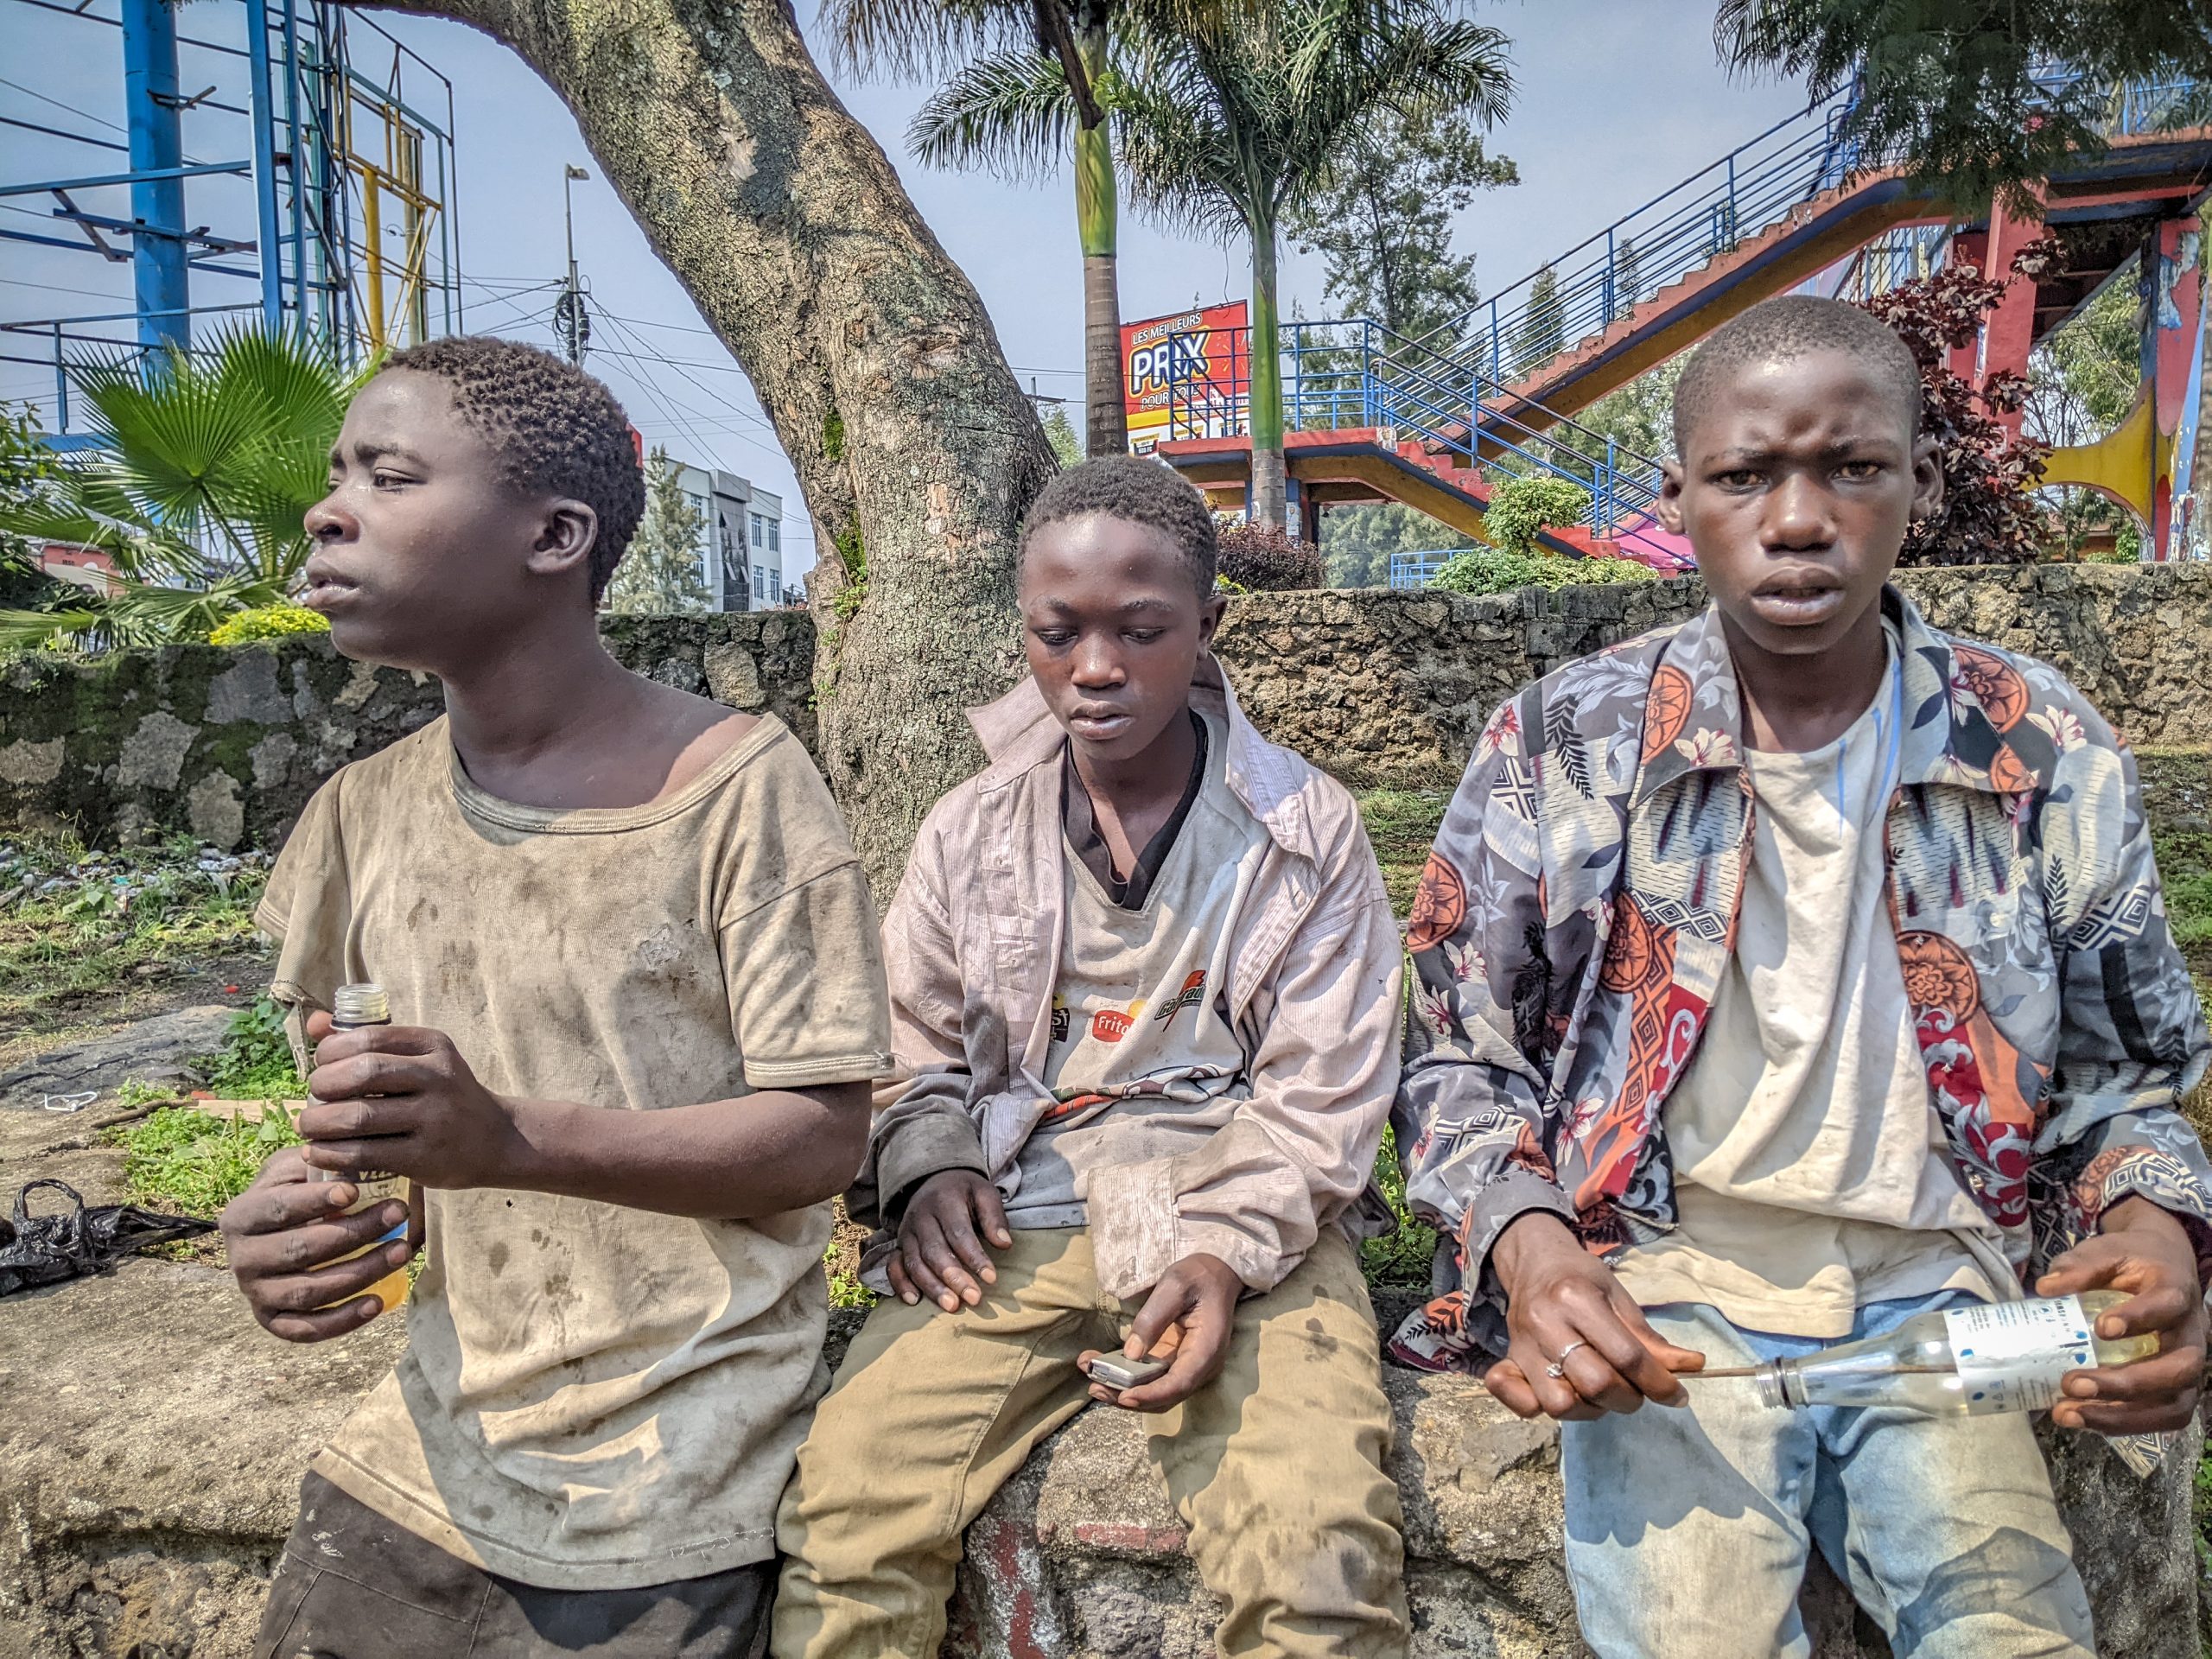 Les vapeurs de colle, une drogue qui ravage les enfants de la rue à Goma